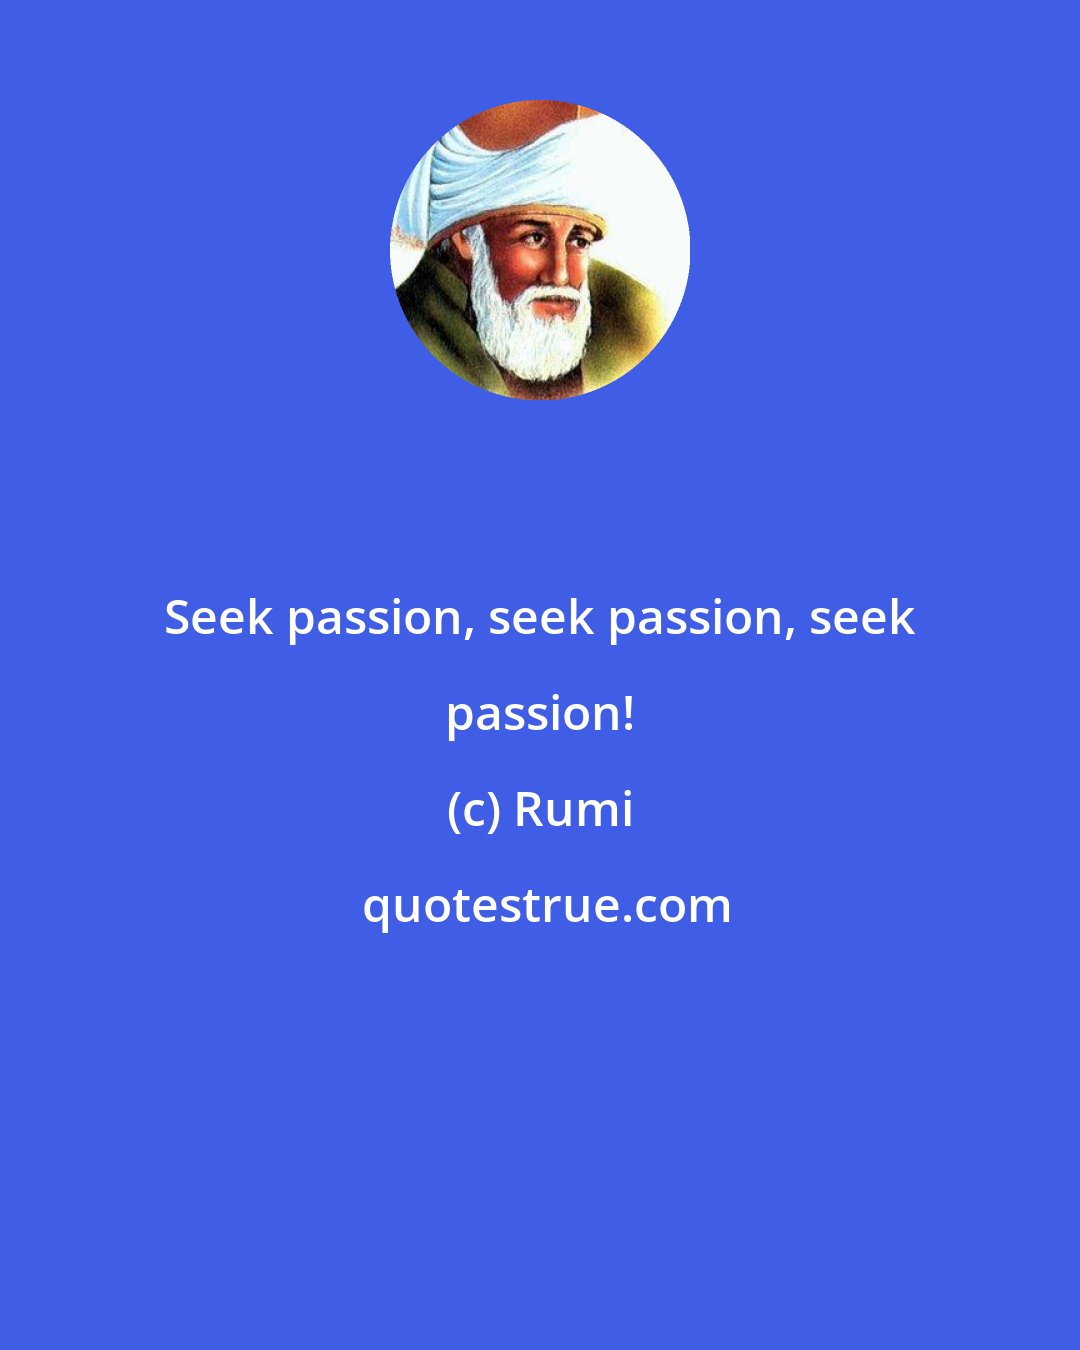 Rumi: Seek passion, seek passion, seek passion!